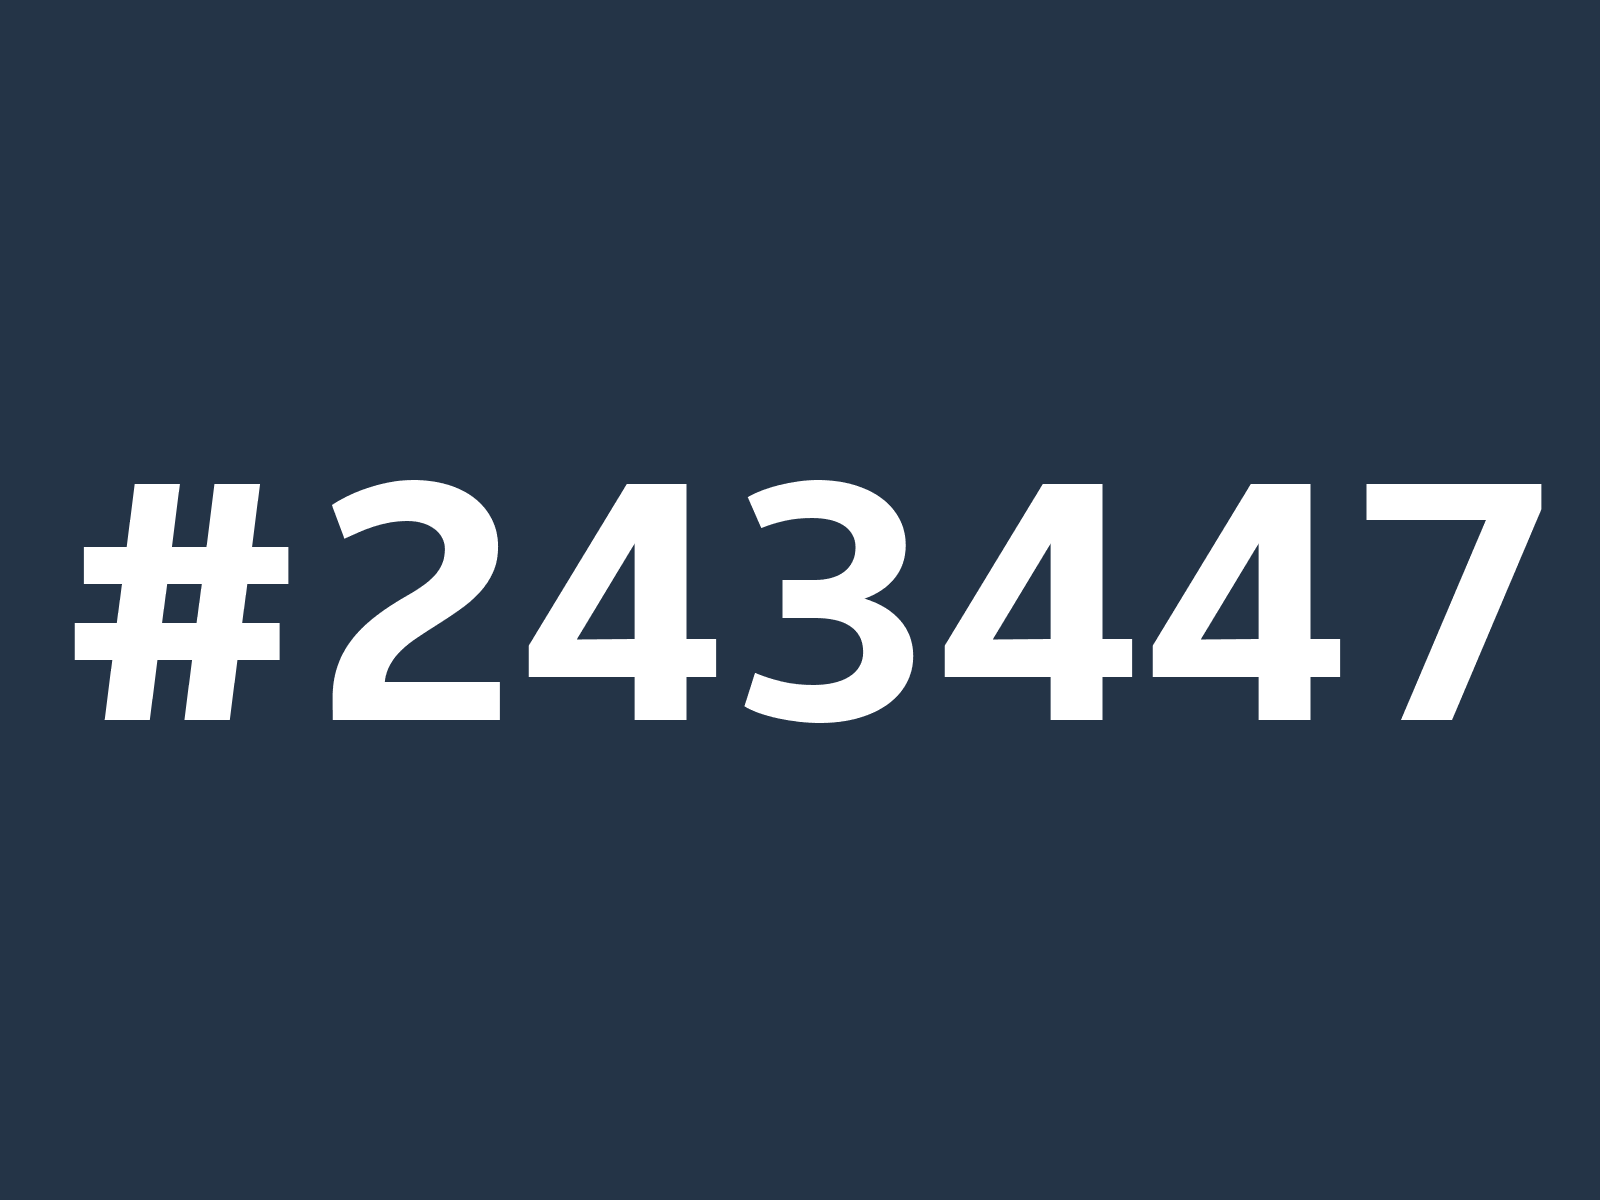 243447